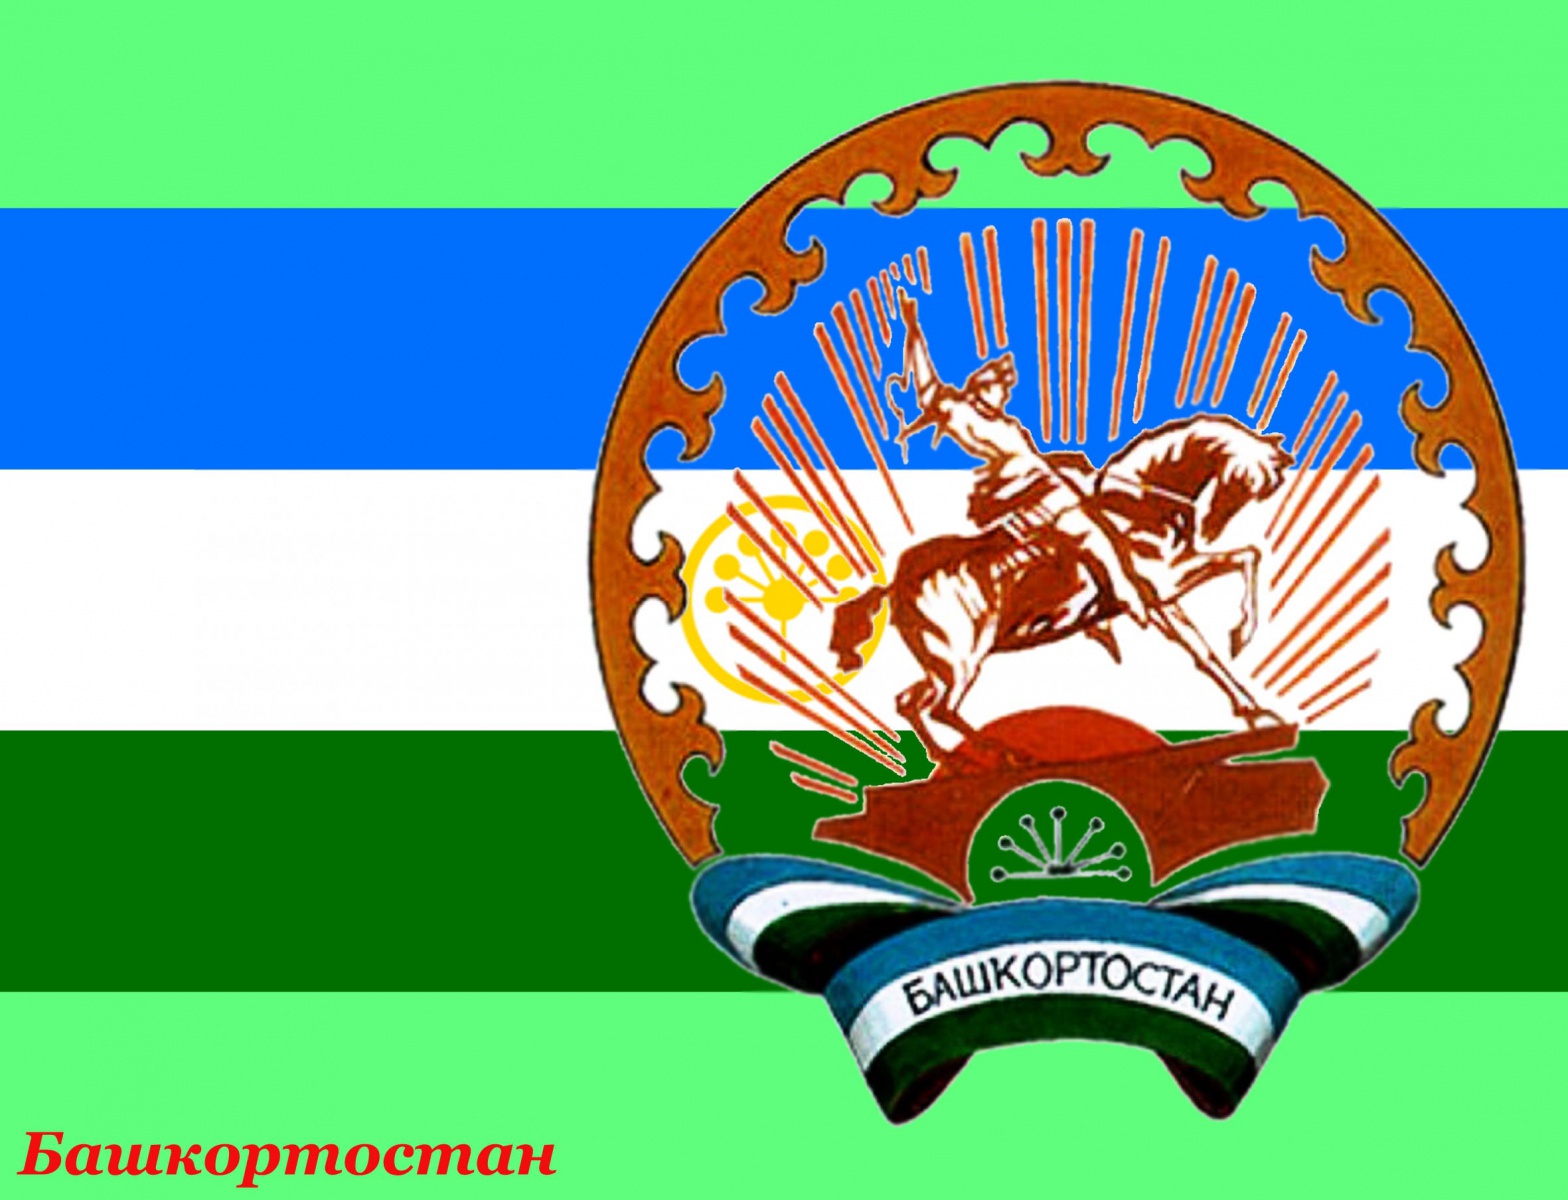 Герб и флаг Республики Башкортостан